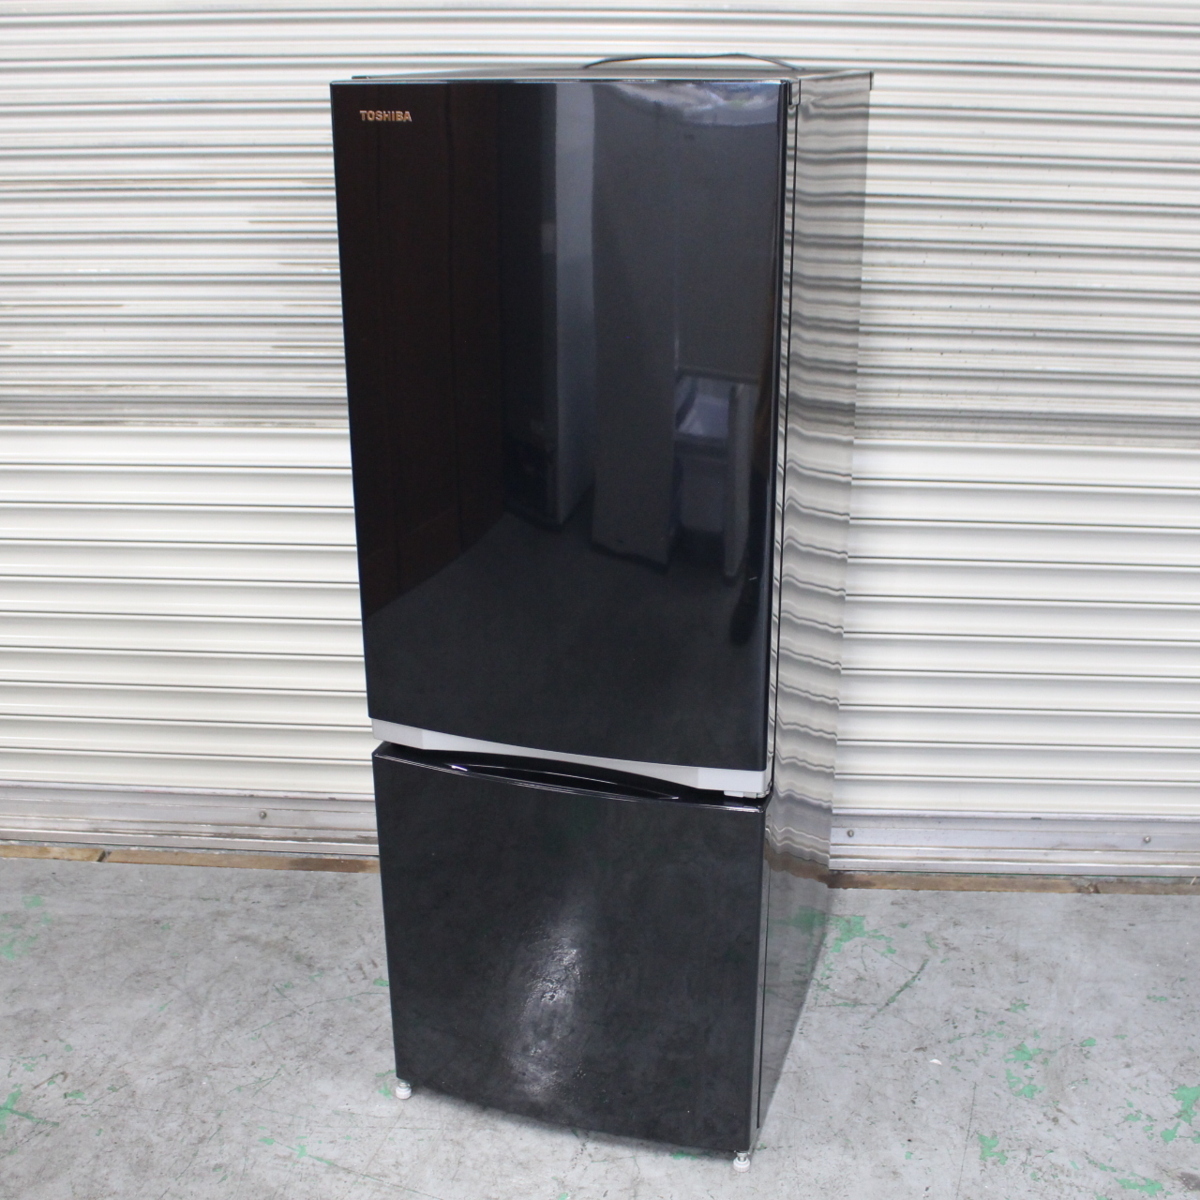 横浜市南区にて 東芝 冷蔵庫 GR-M15BS 2018年製 を出張買取させて頂きました。